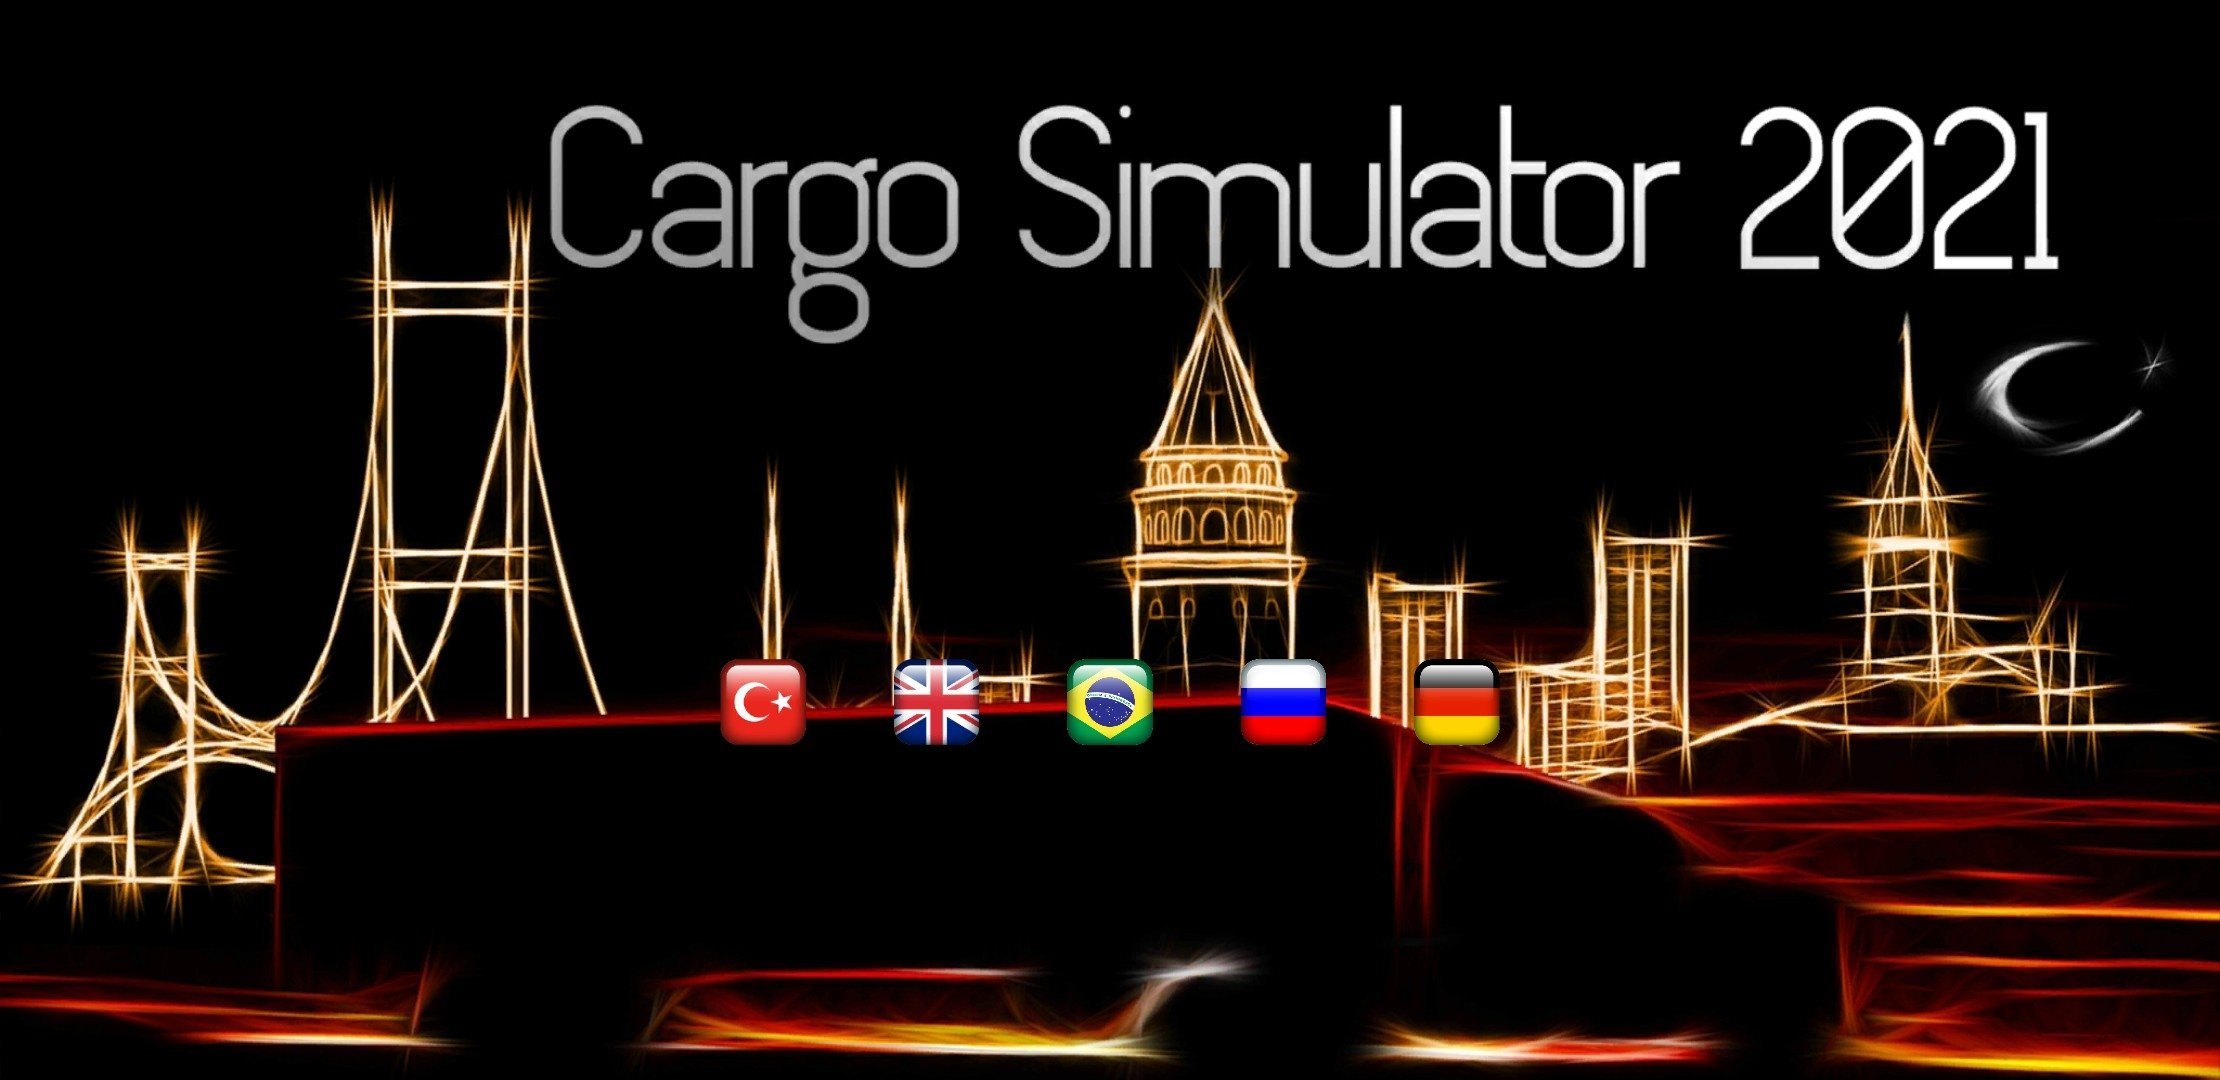 Cargo Simulator 2021